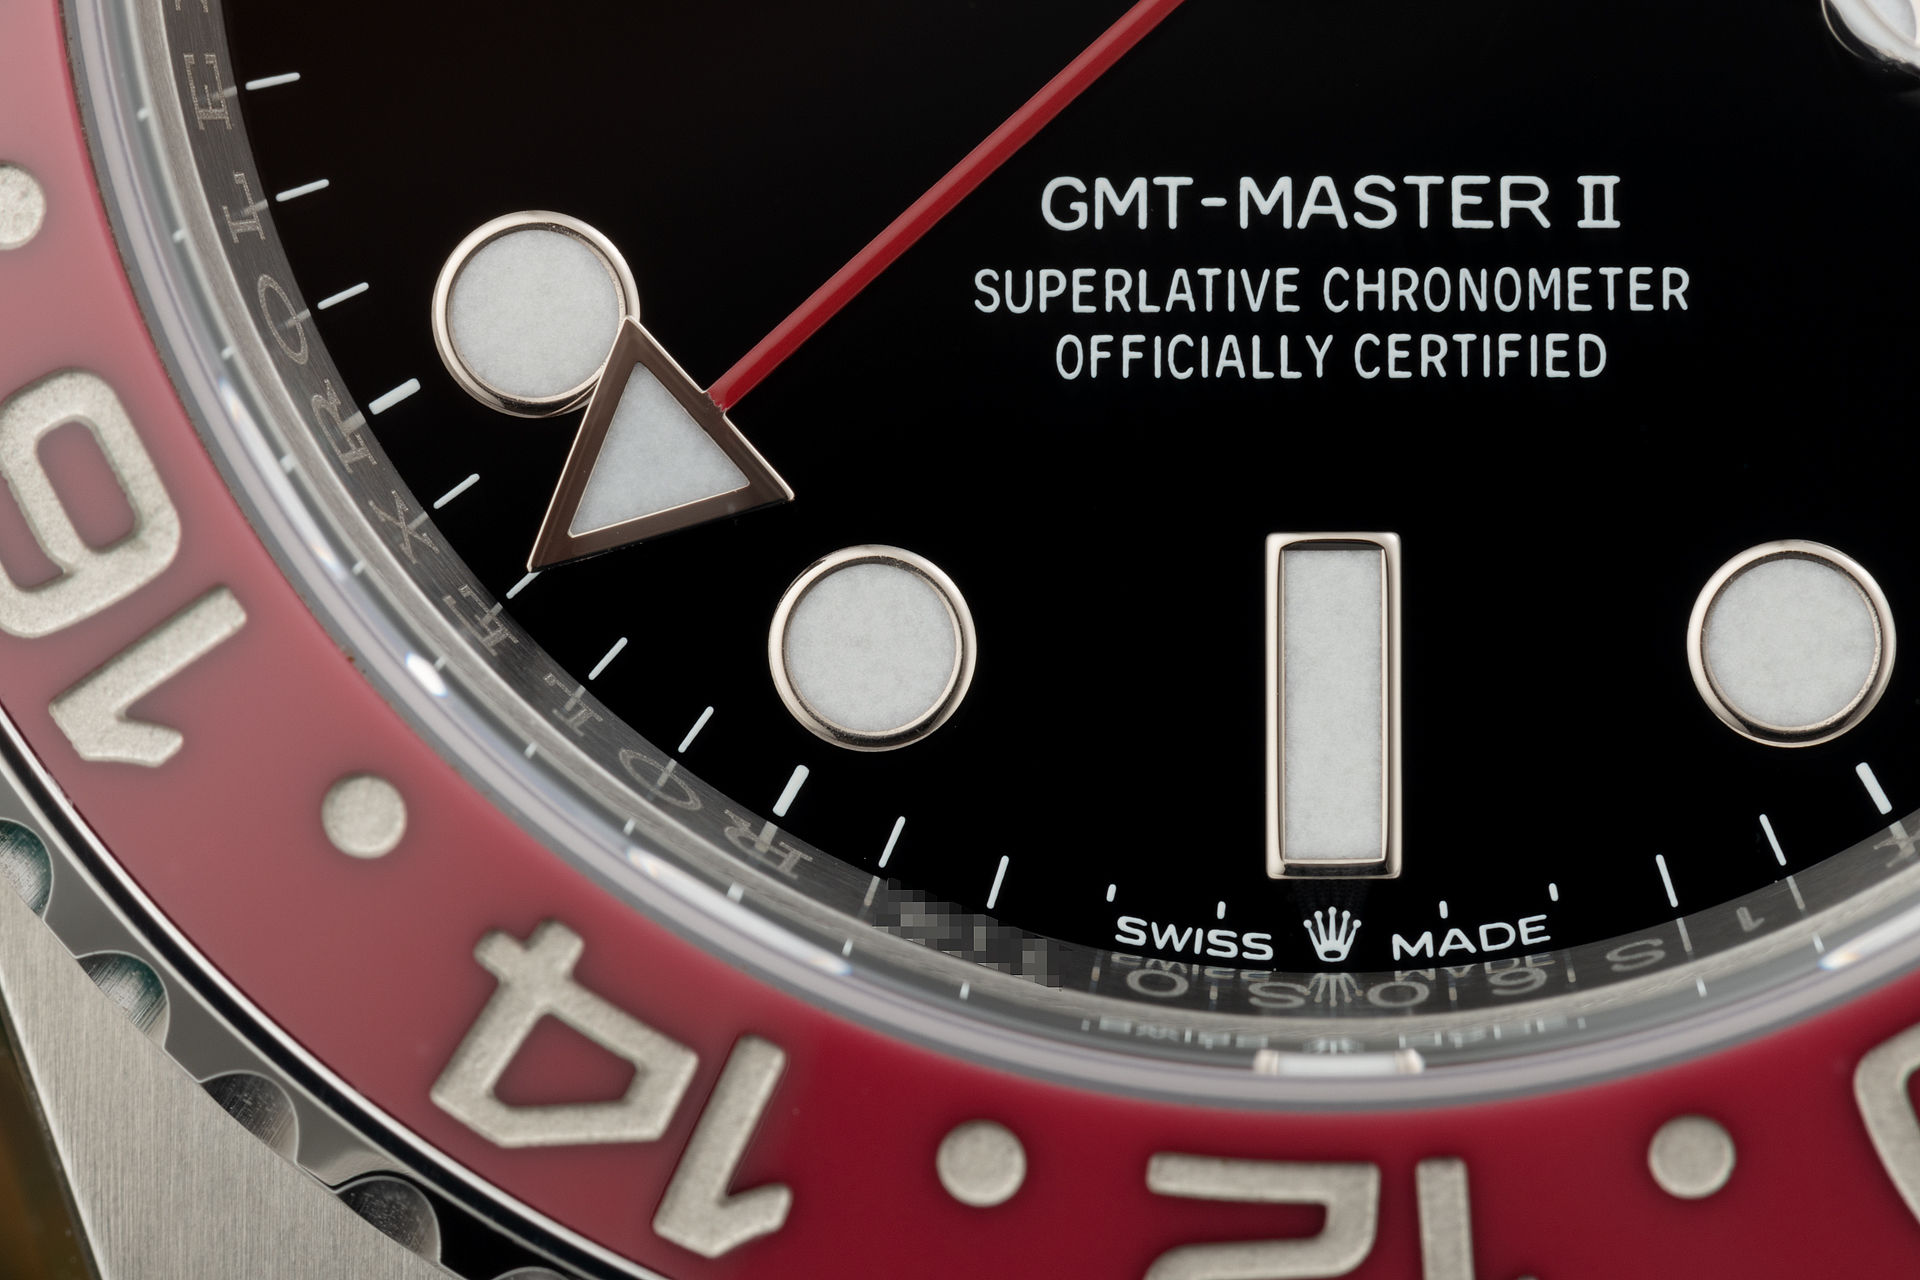 Brand New 5 Year Warranty | ref 126710BLRO | Rolex GMT-Master II